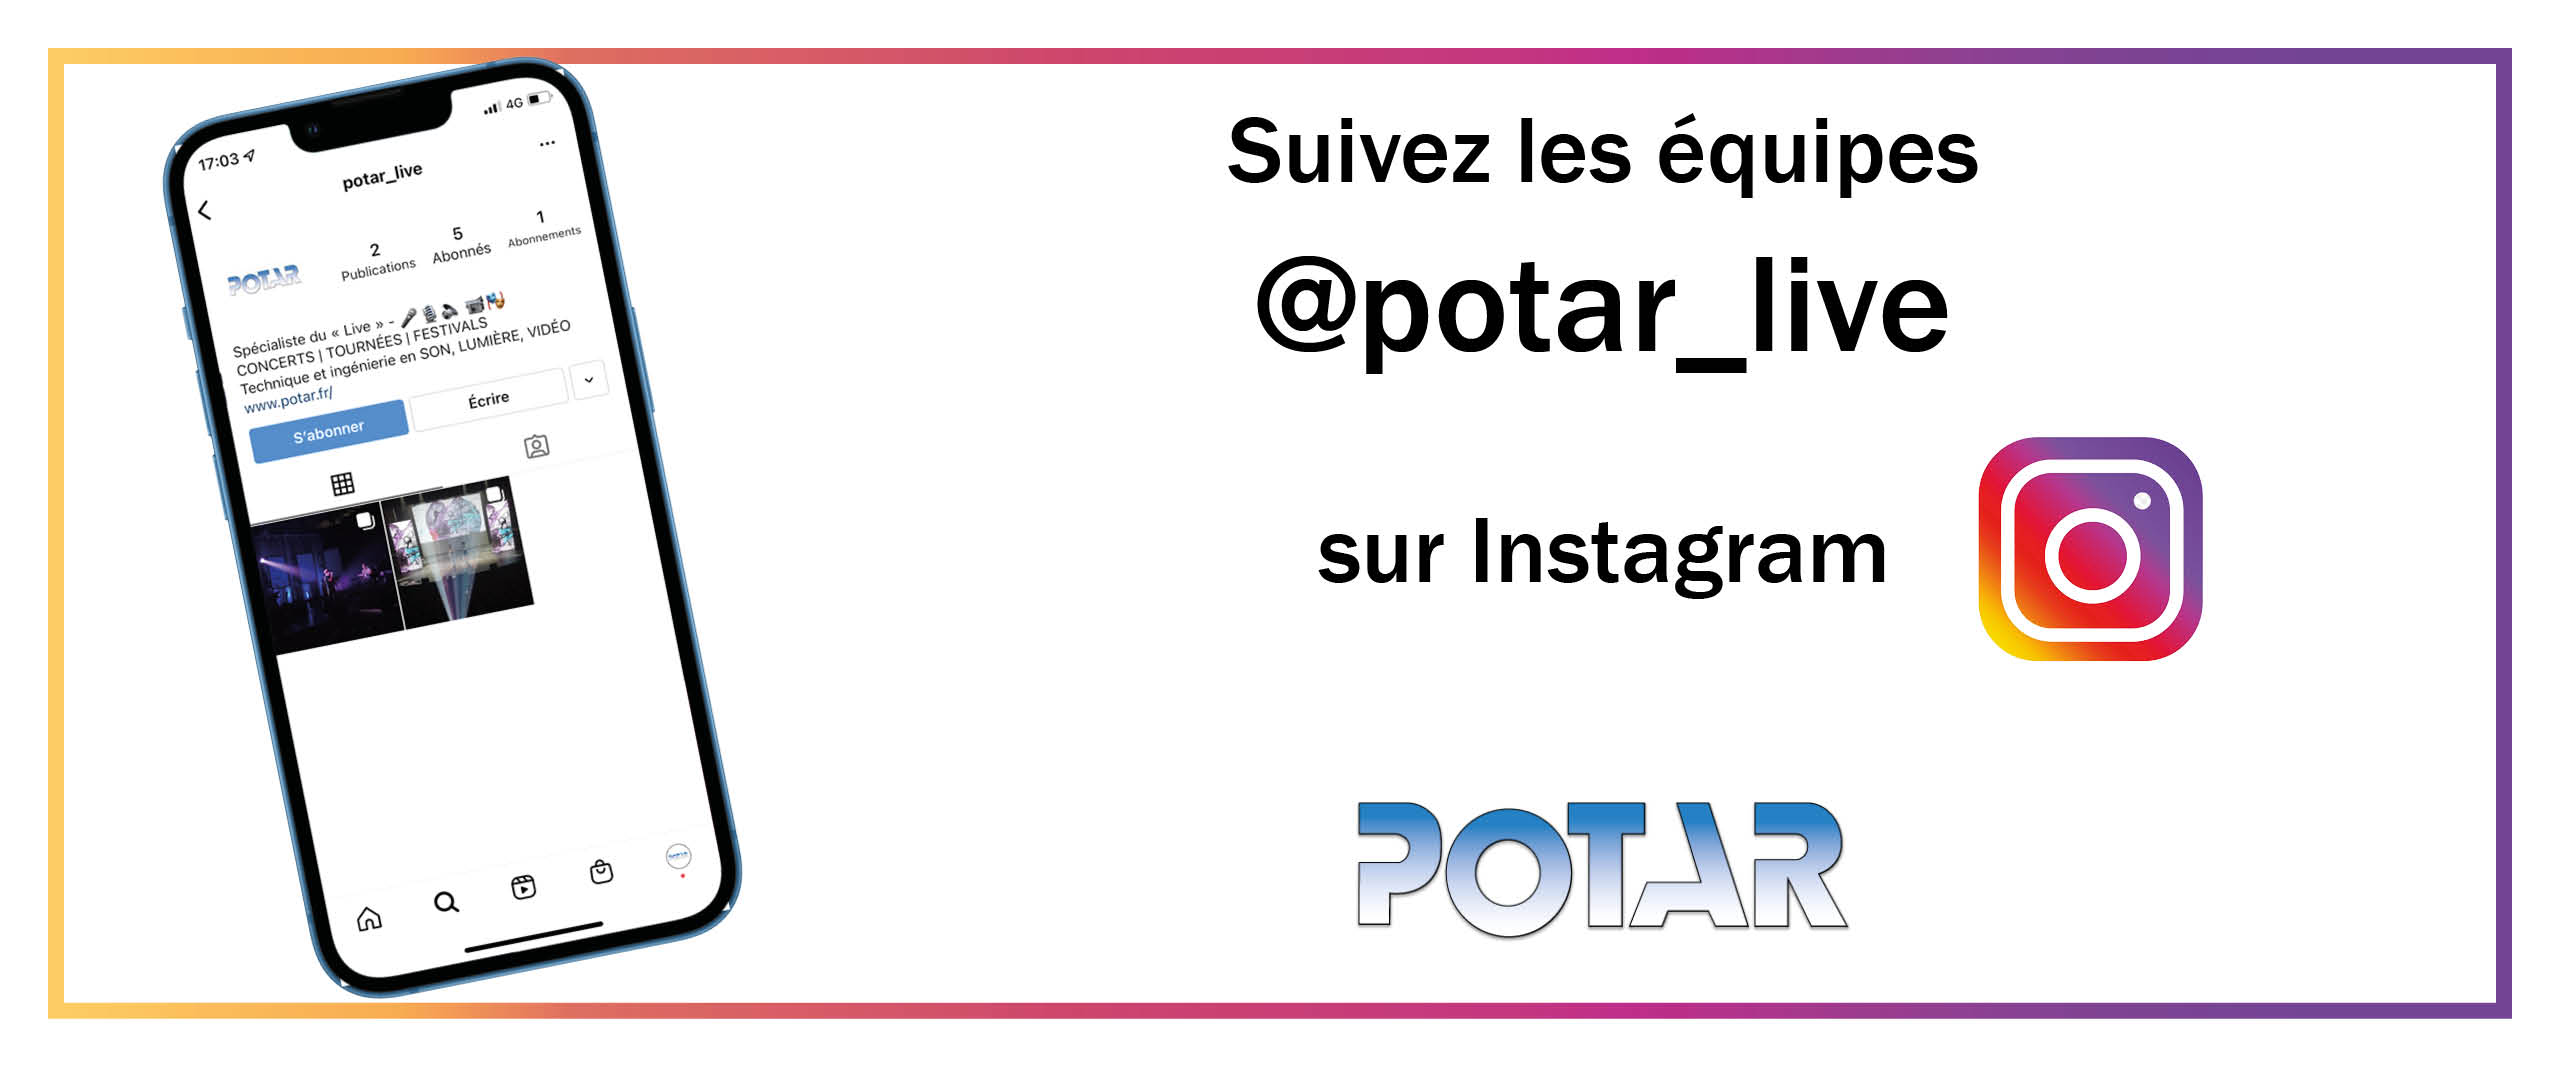 Visuel Suivez les équipes Potar sur Instagram !